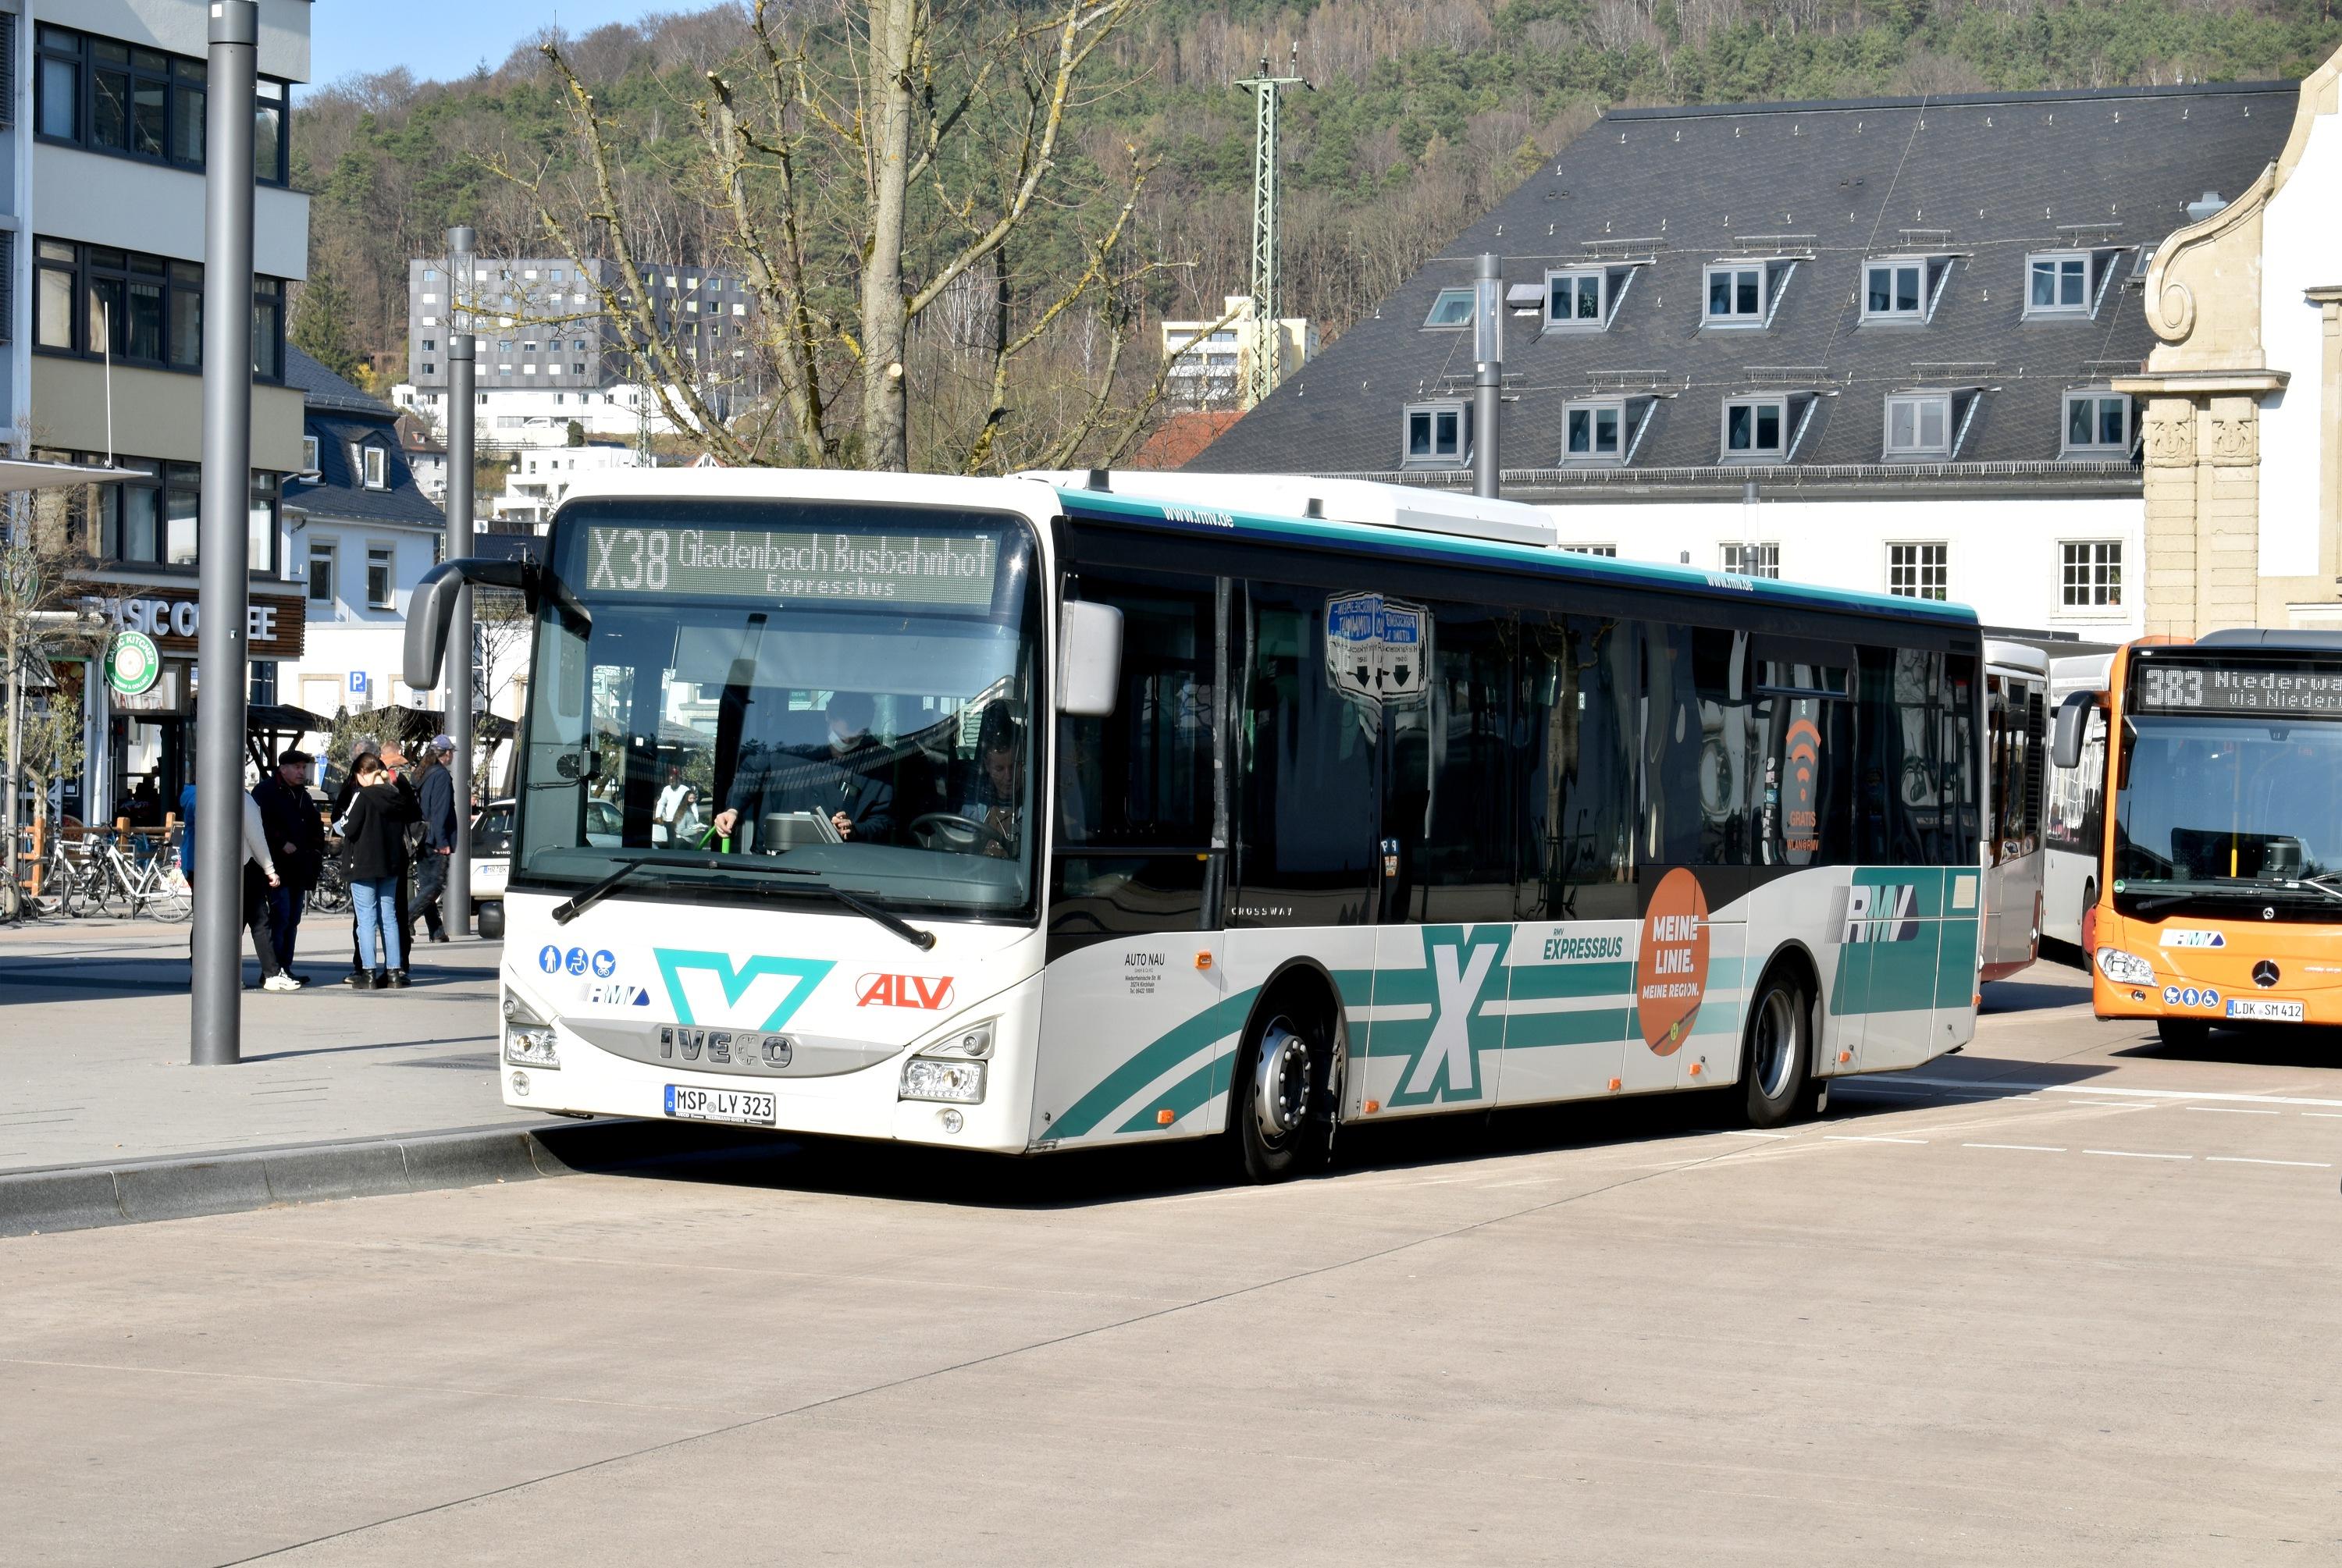 X38 Gladenbach-Busbahnhof Marburg Hbf